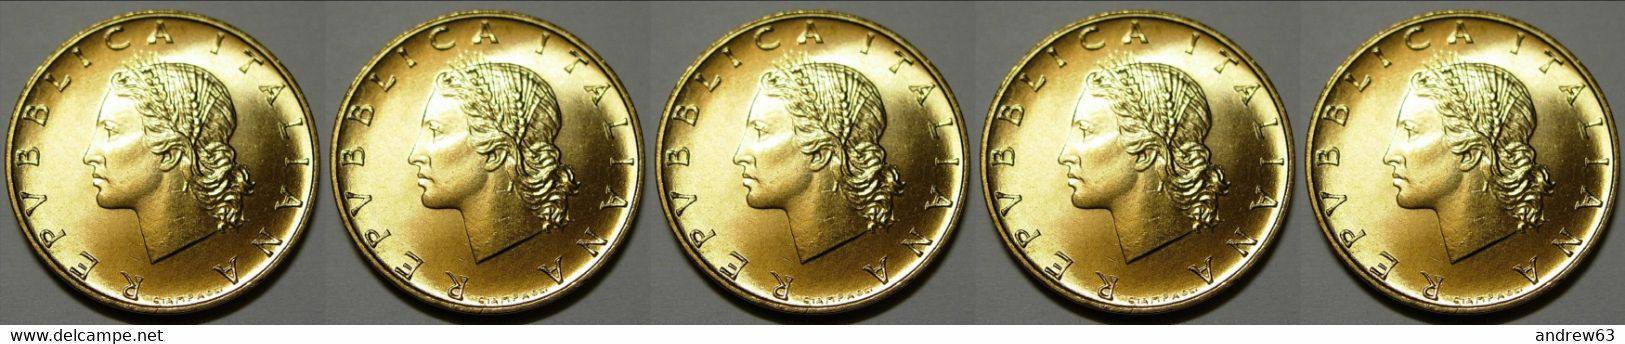 ITALIA - Lire 20 1988 - FDC/Unc Da Rotolino/from Roll 5 Monete/5 Coins - 20 Liras